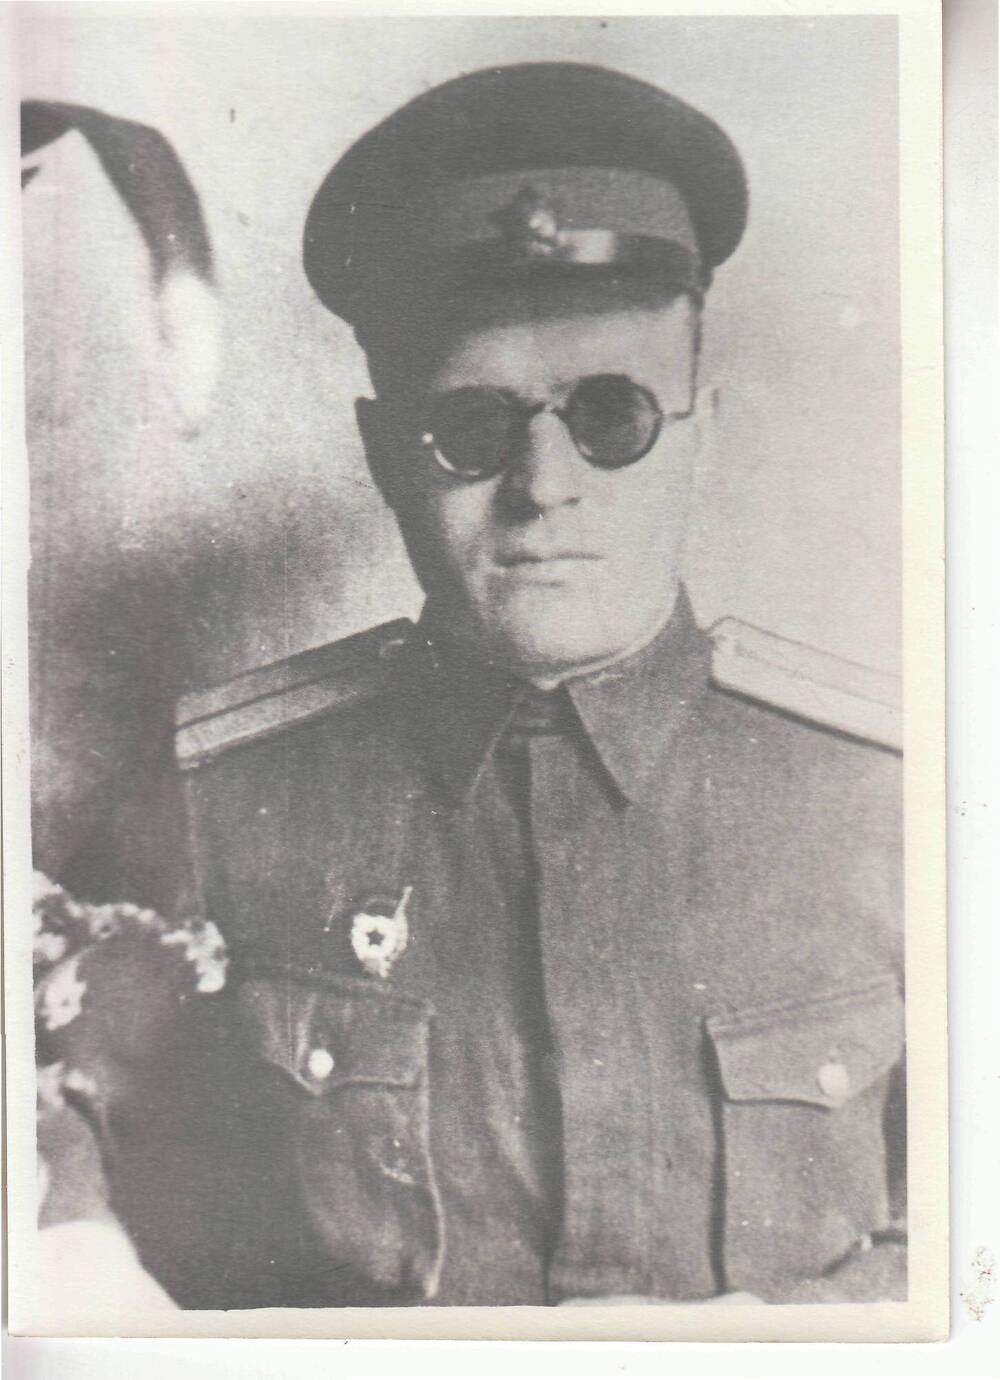 Фото (копия)  ч/б, матовое, портрет поясной ветеран 57 армии Артамонов М. П.